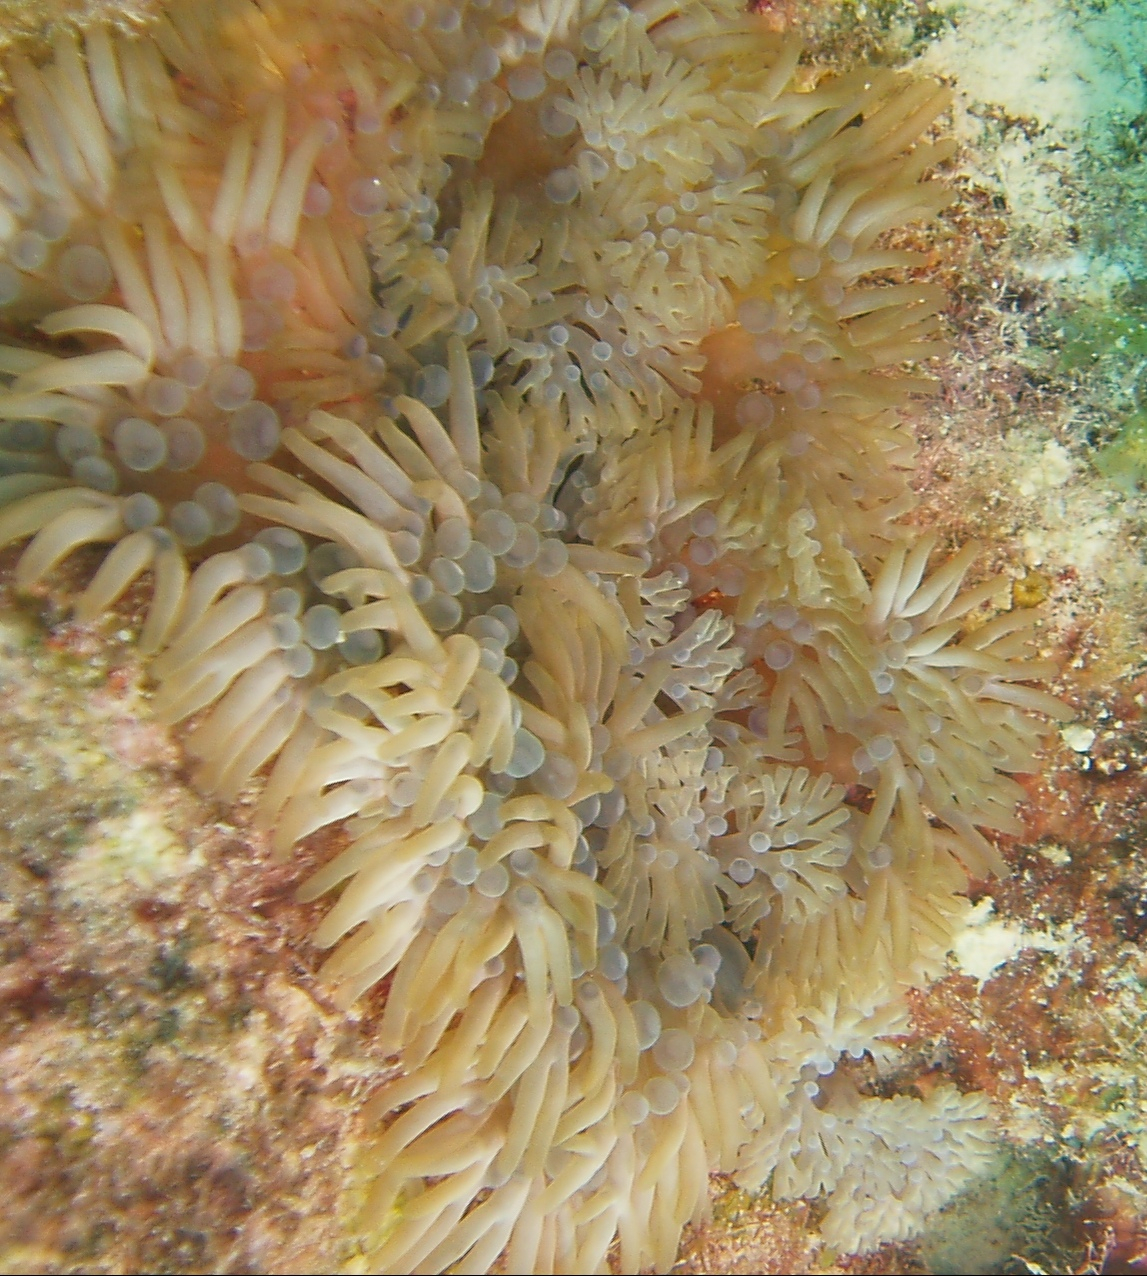 Branching anemone